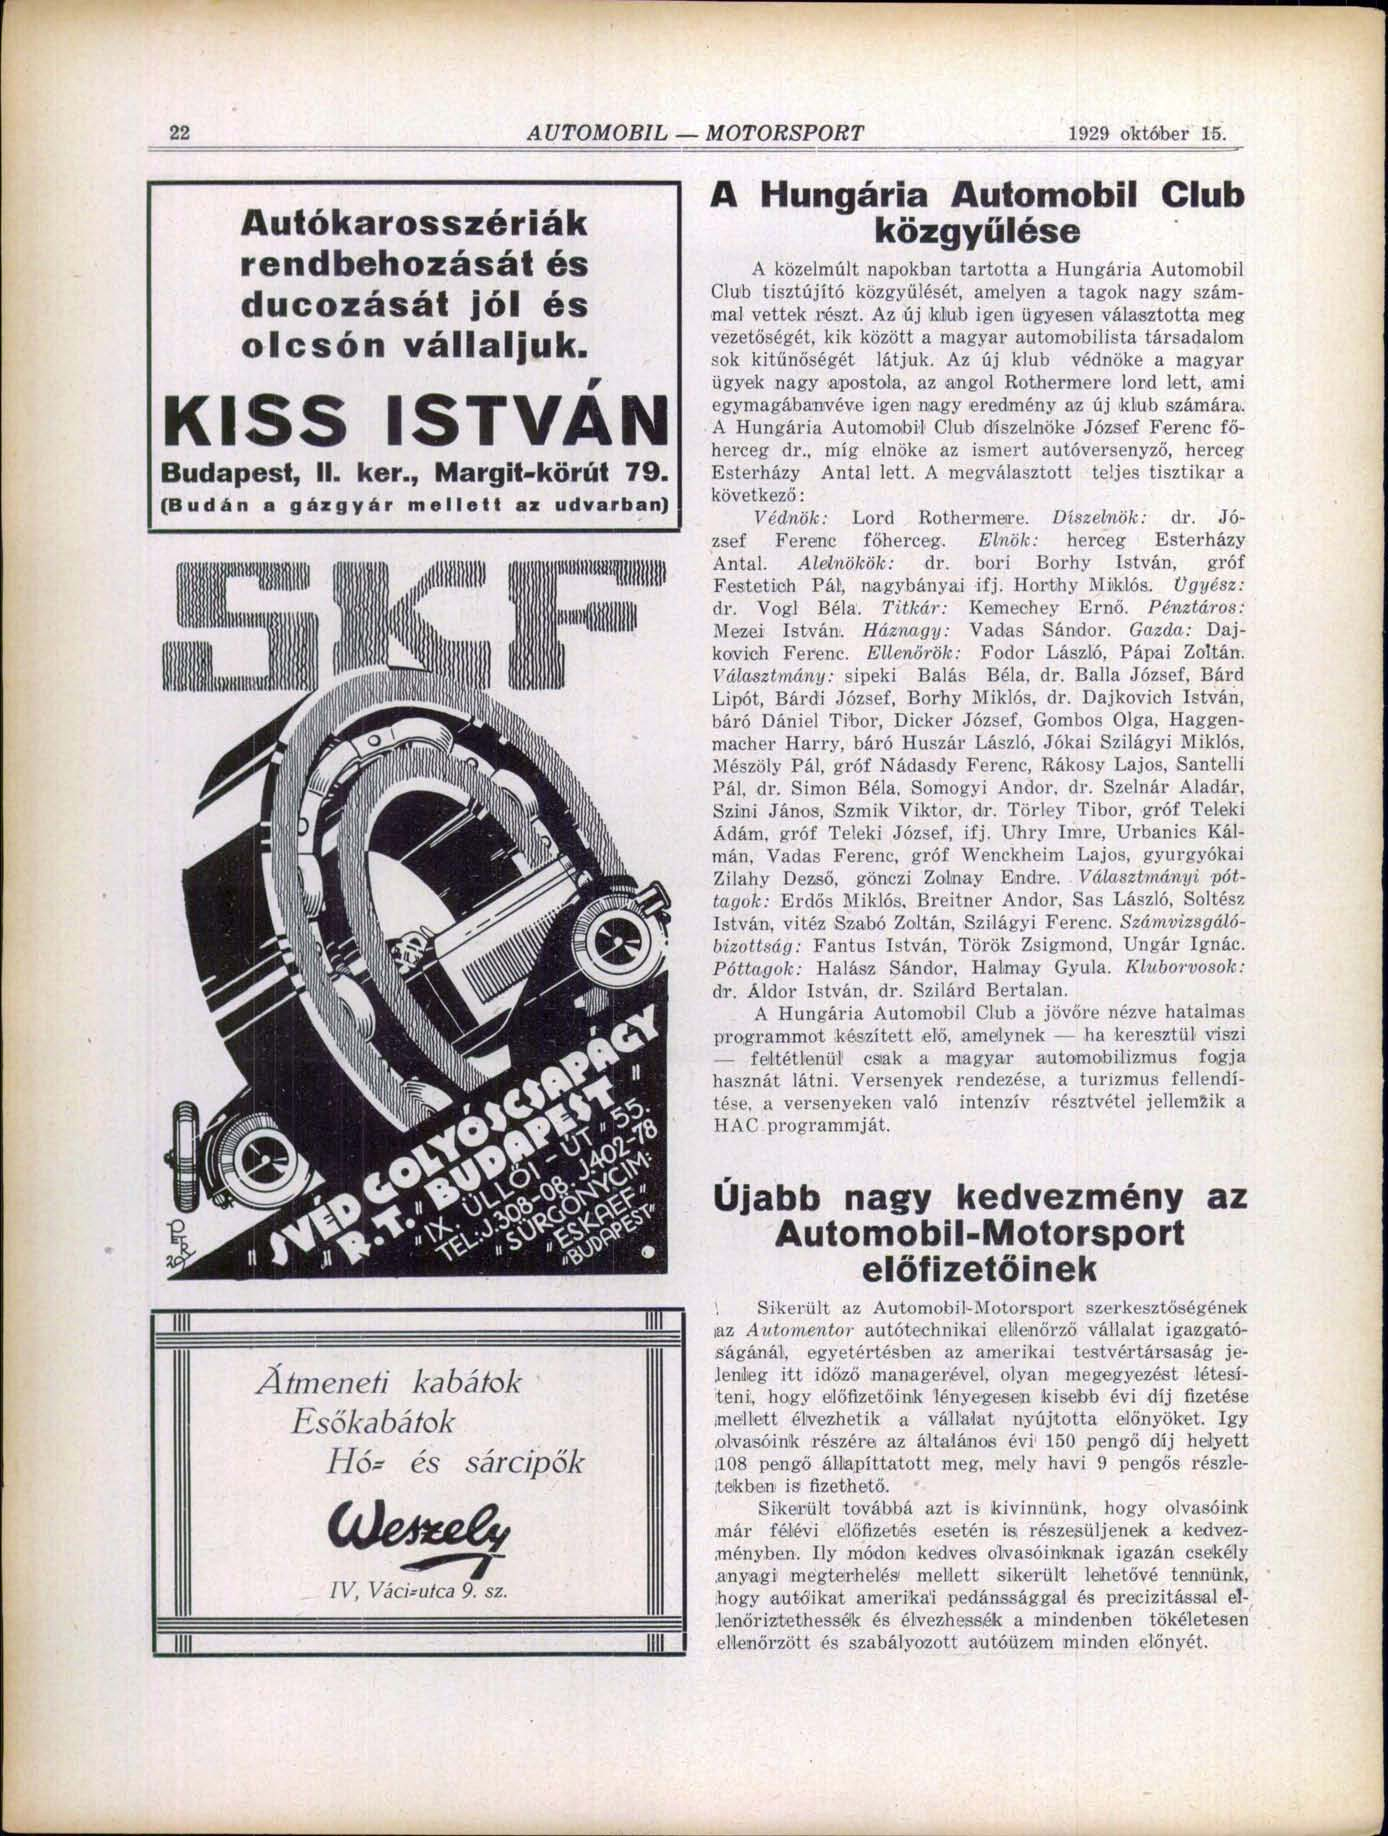 22 AUTOMOBIL MOTORSPORT 1929 október 15. Autókarosszériák rendbehozását és ducozását jól és olcsón vállaljuk. KISS ISTVÁN Budapest, II. ker., Margit-körűt 79.